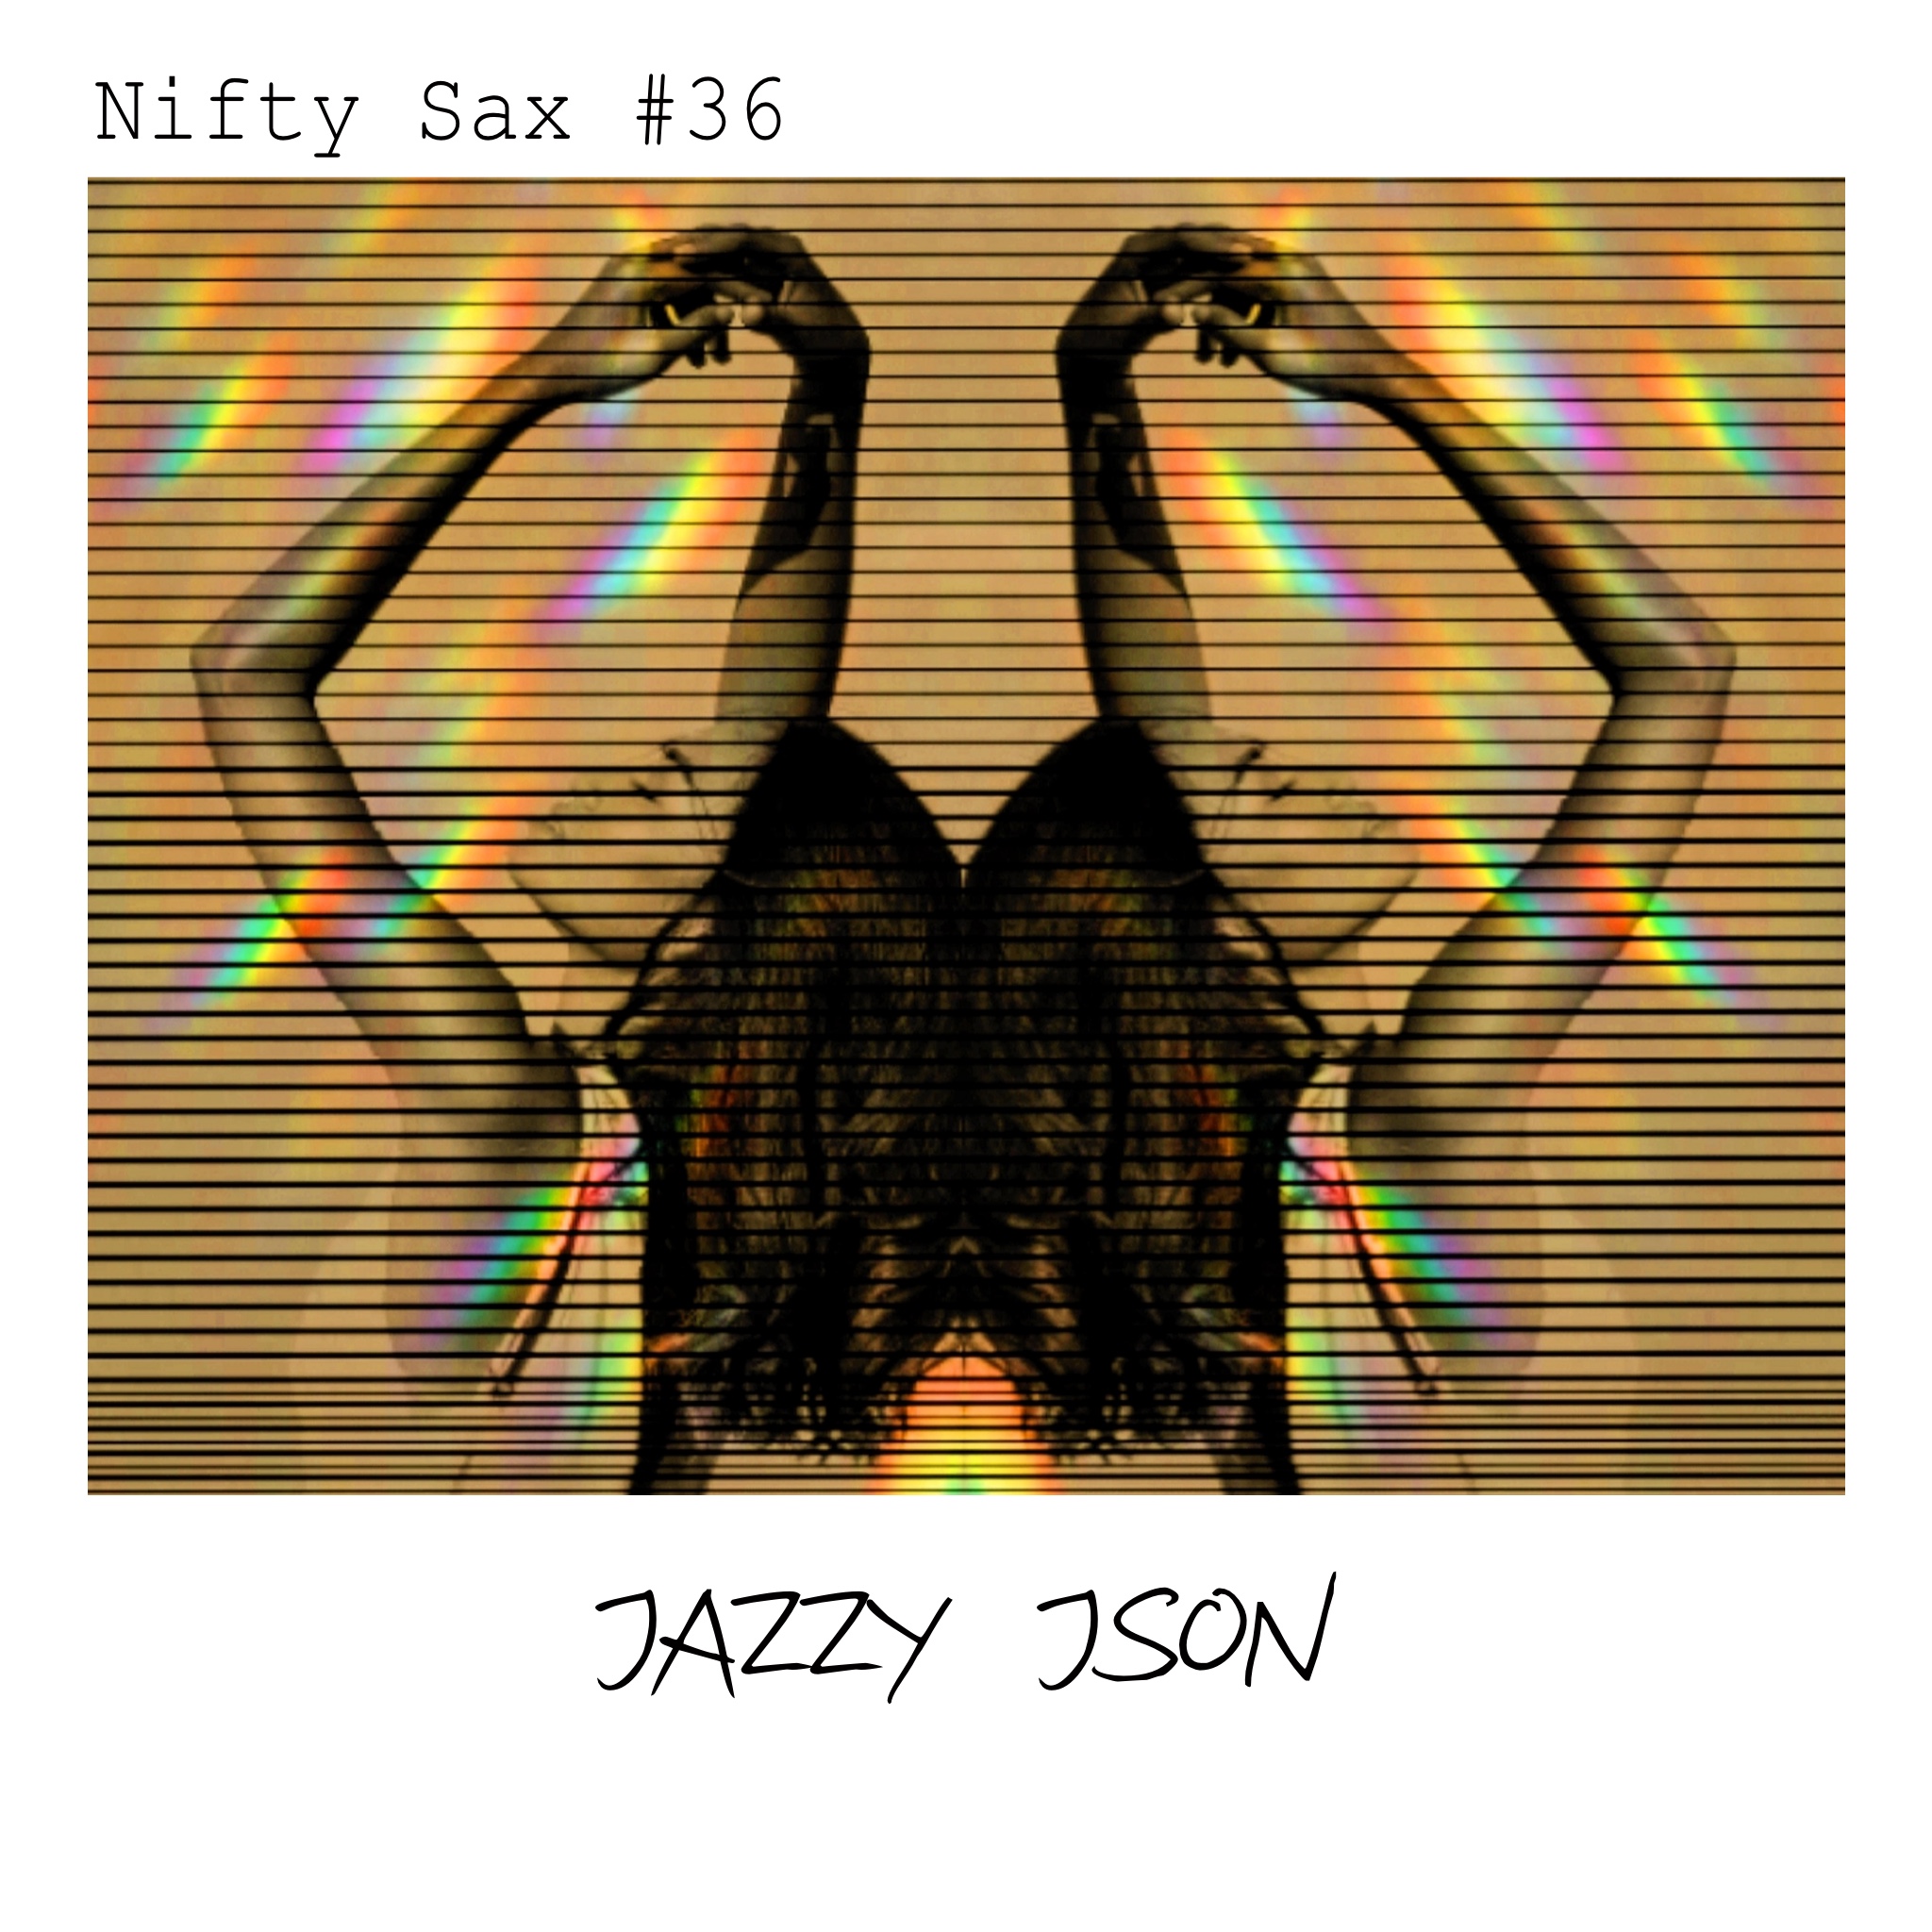 Nifty Sax: Genesis #36 - Jazzy JSON